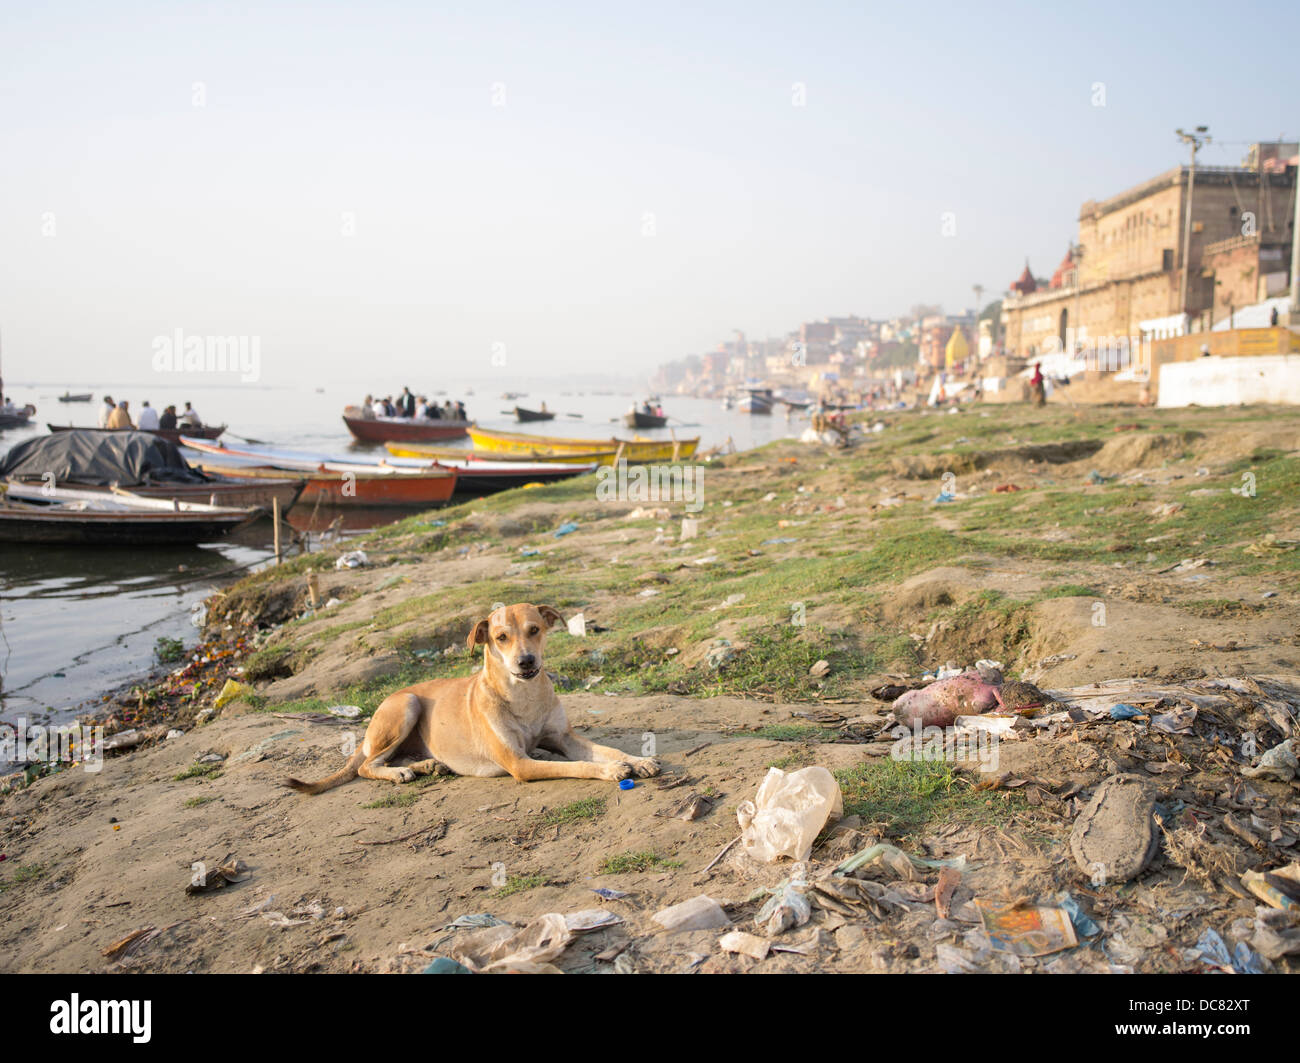 Les chiens errants, et le chien cadavre. La vie sur les rives de la rivière Ganges - Varanasi, Inde Banque D'Images